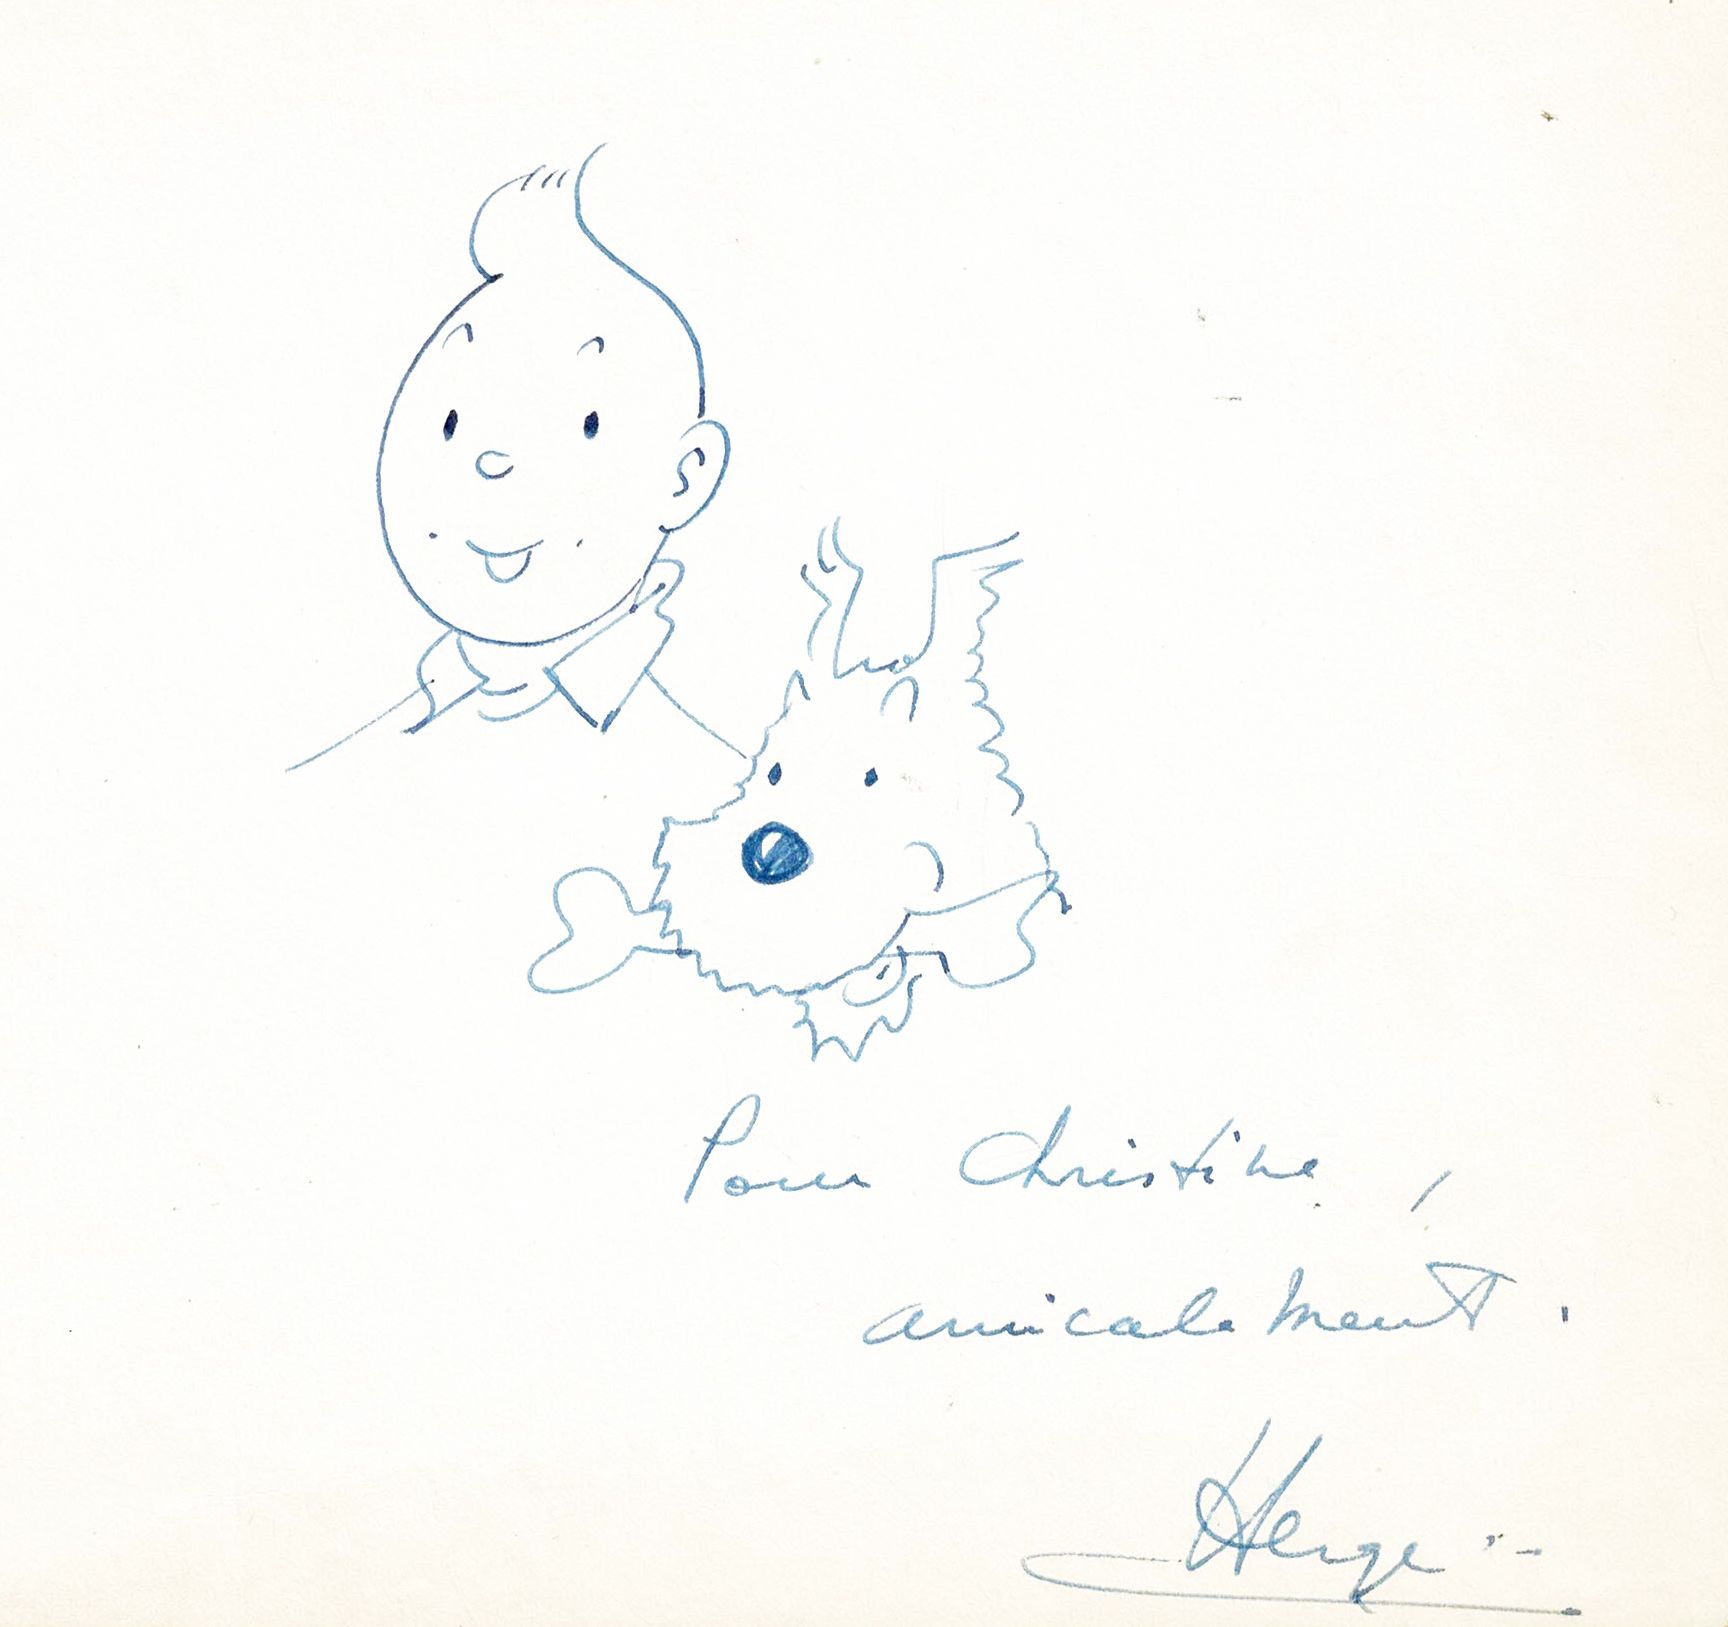 HERGÉ 
Tintin et Milou, dédicace à l'encre bleue réalisée en 1963 dans un carnet&hellip;